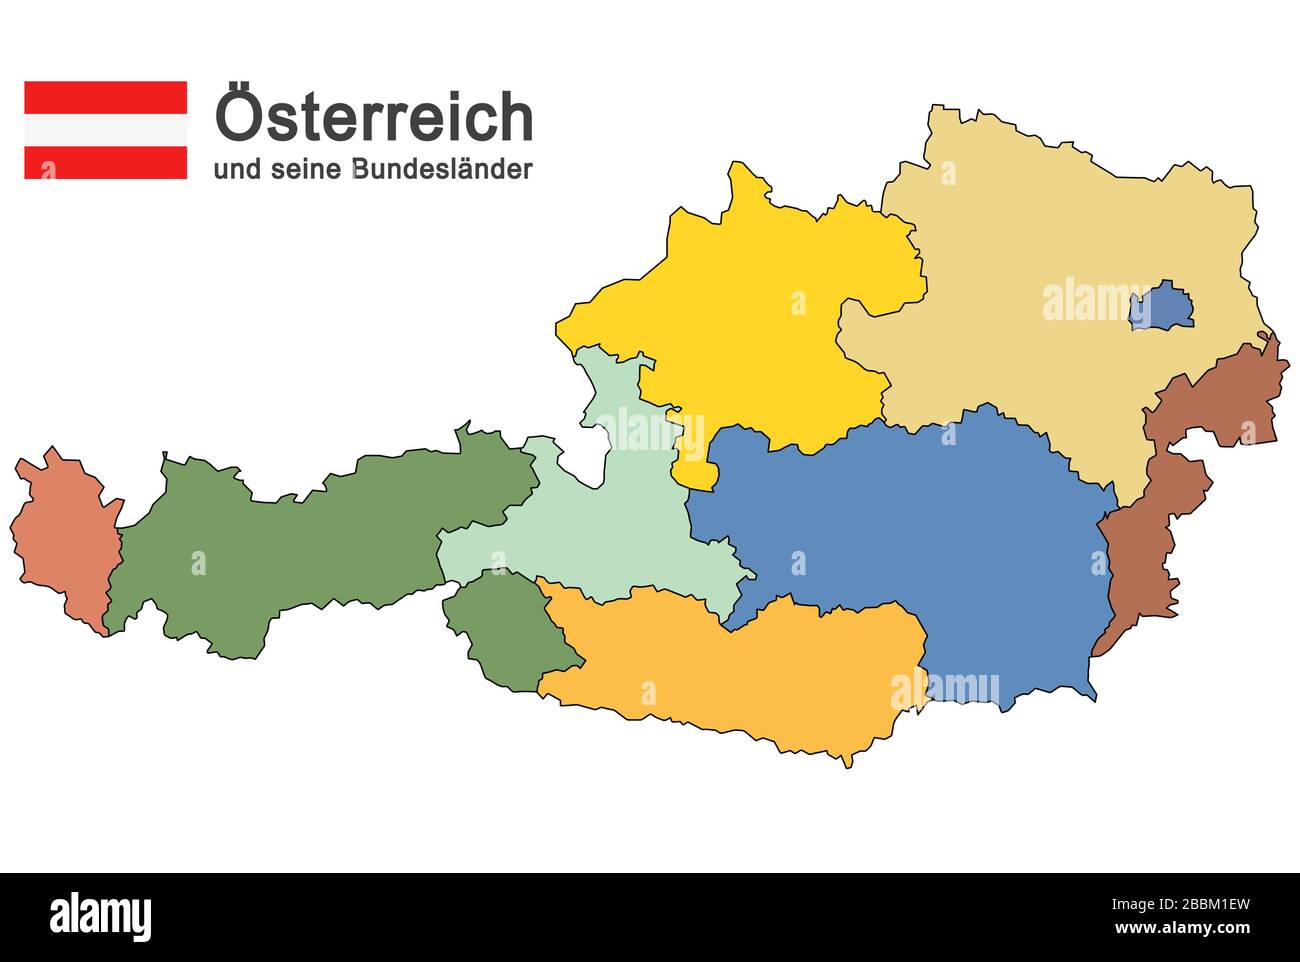 Farbige Silhouetten Österreichs und der Bundesländer Stock Vektor